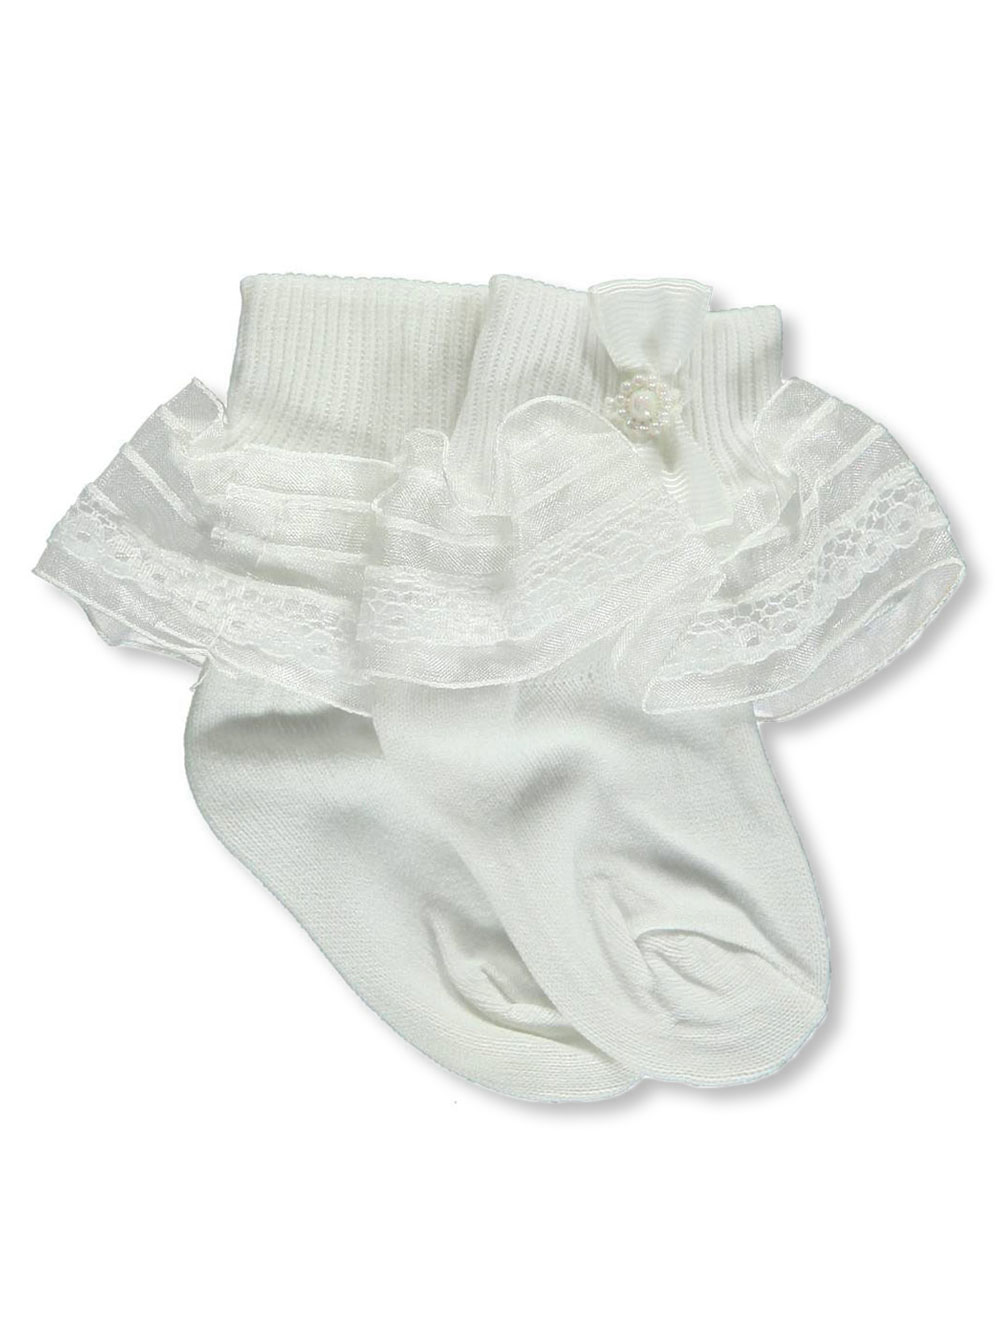 Baby Girls' White Ruffle Socks